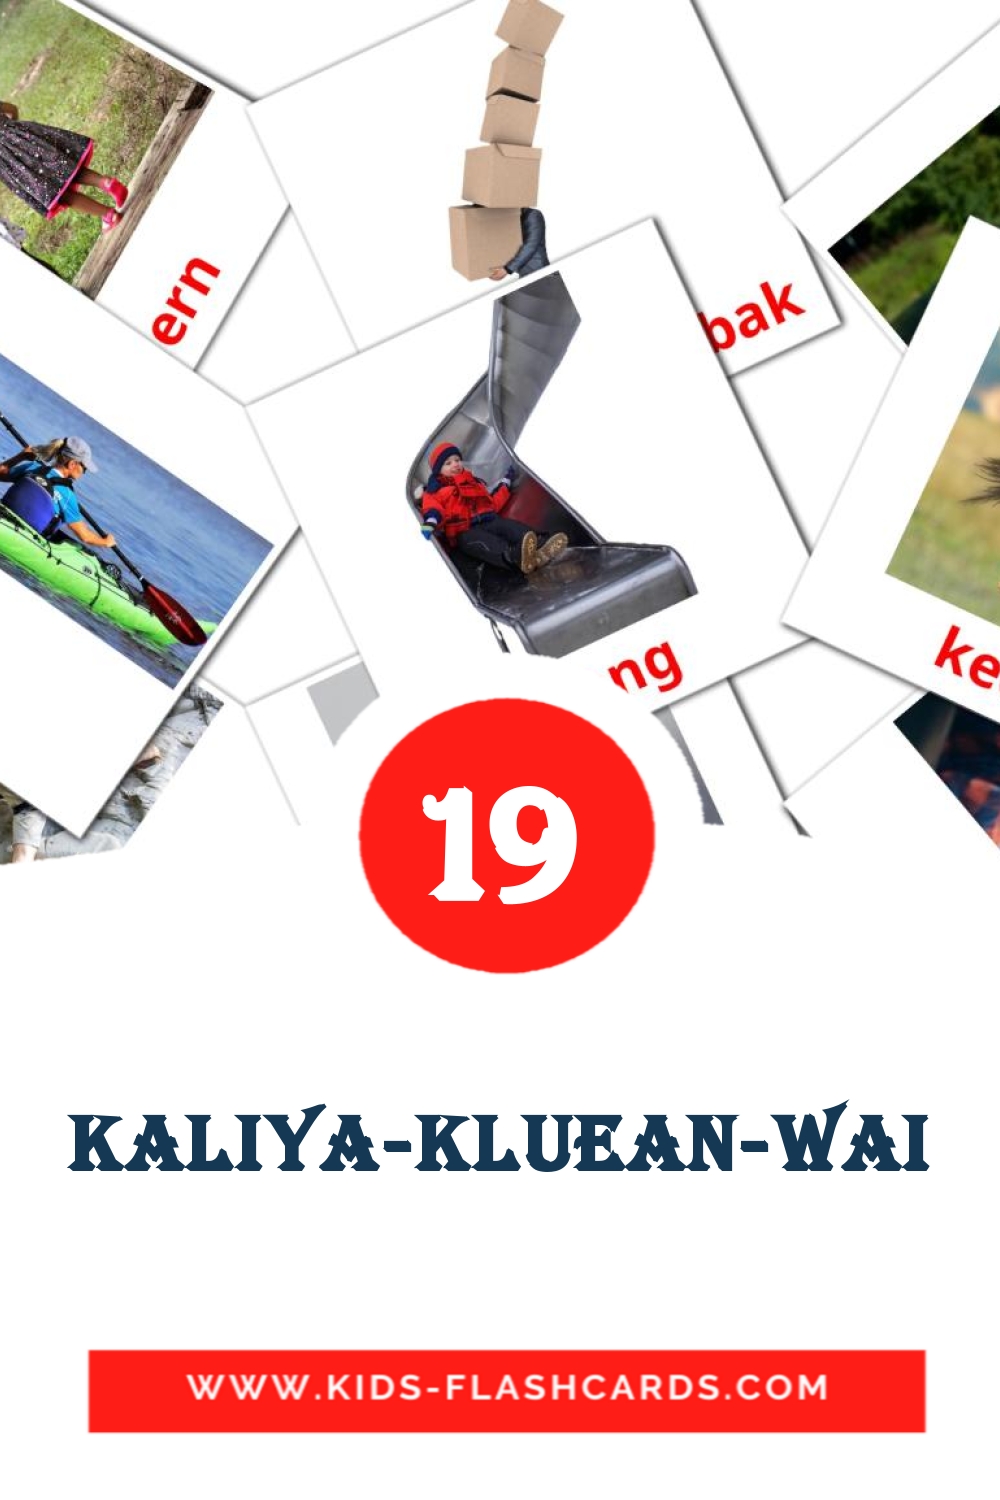 19 Cartões com Imagens de Kaliya-kluean-wai para Jardim de Infância em ahmárico